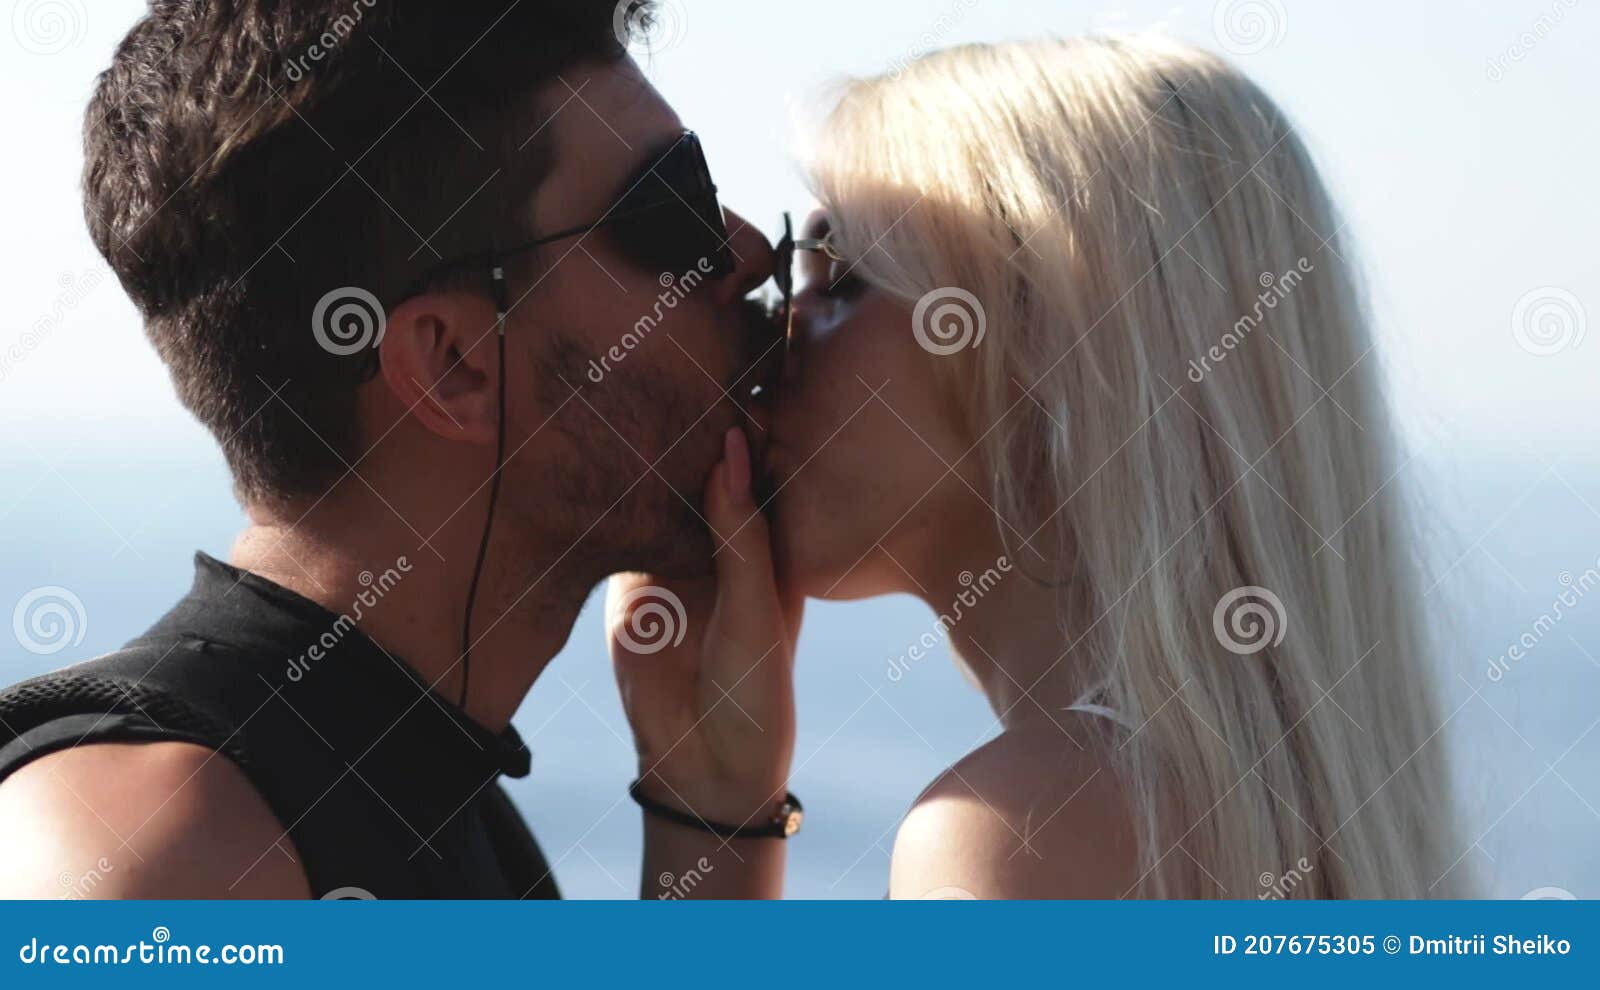 считается ли изменой когда девушка с девушкой целуются фото 28